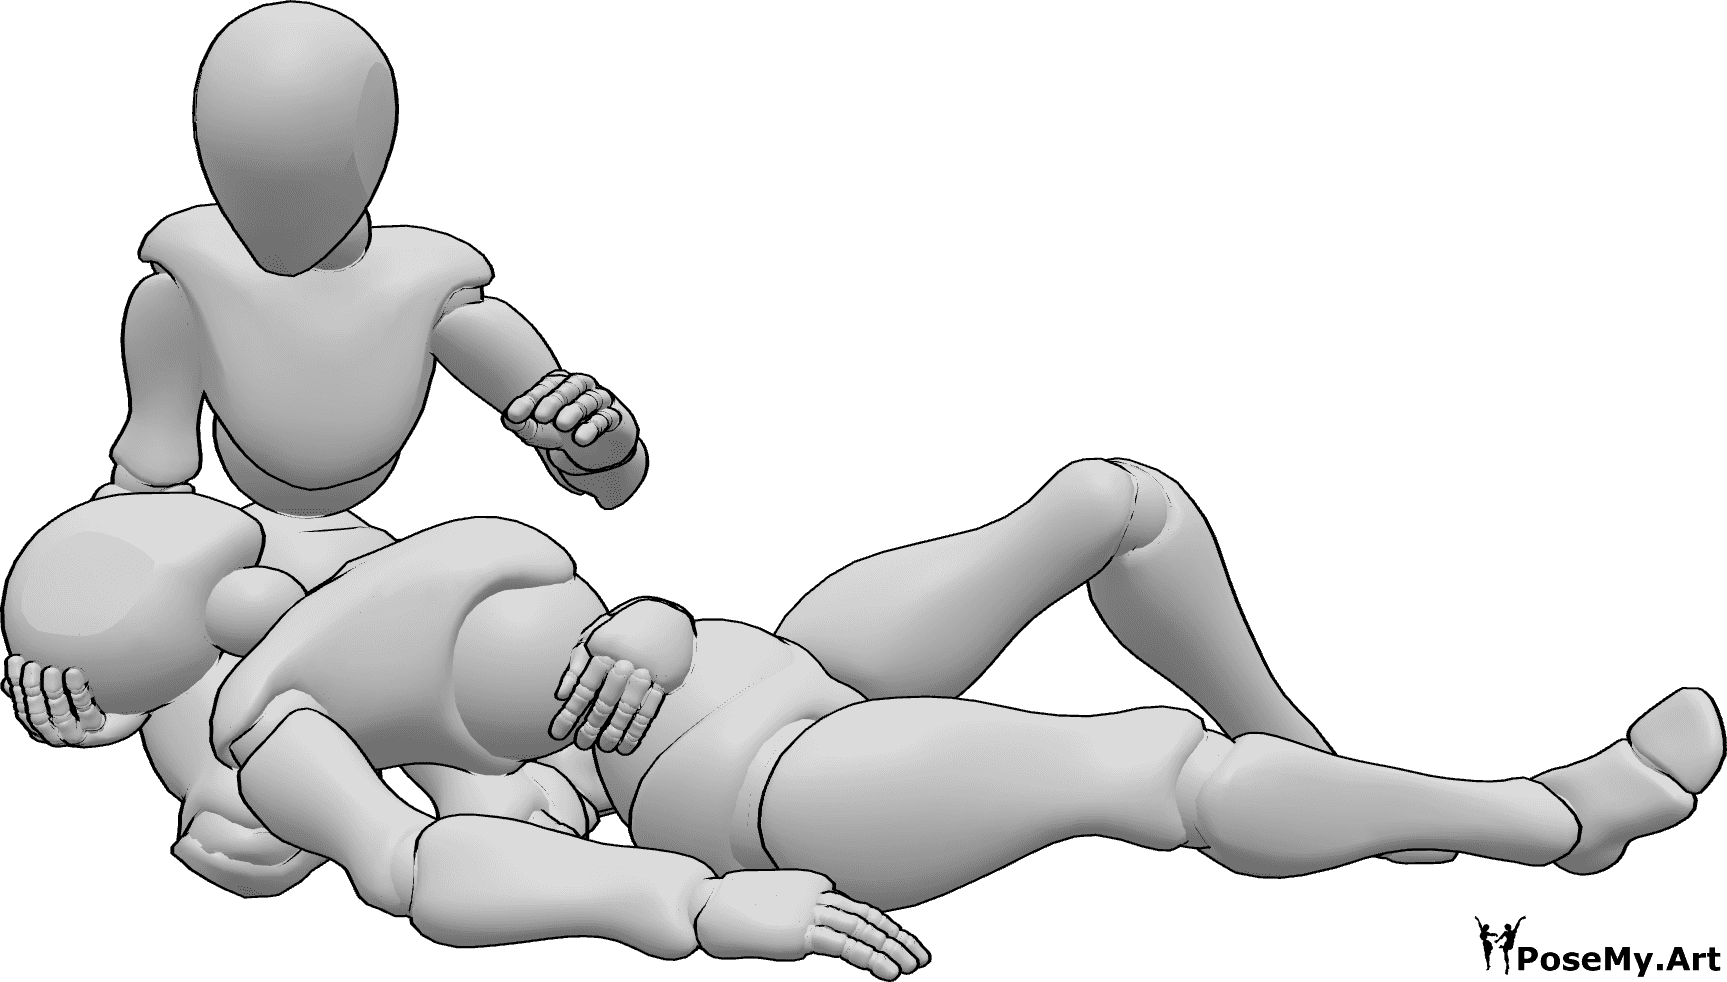 Référence des poses- Femme blessée en position allongée - La femme blessée est allongée sur les genoux de l'autre femme et se tient le ventre.